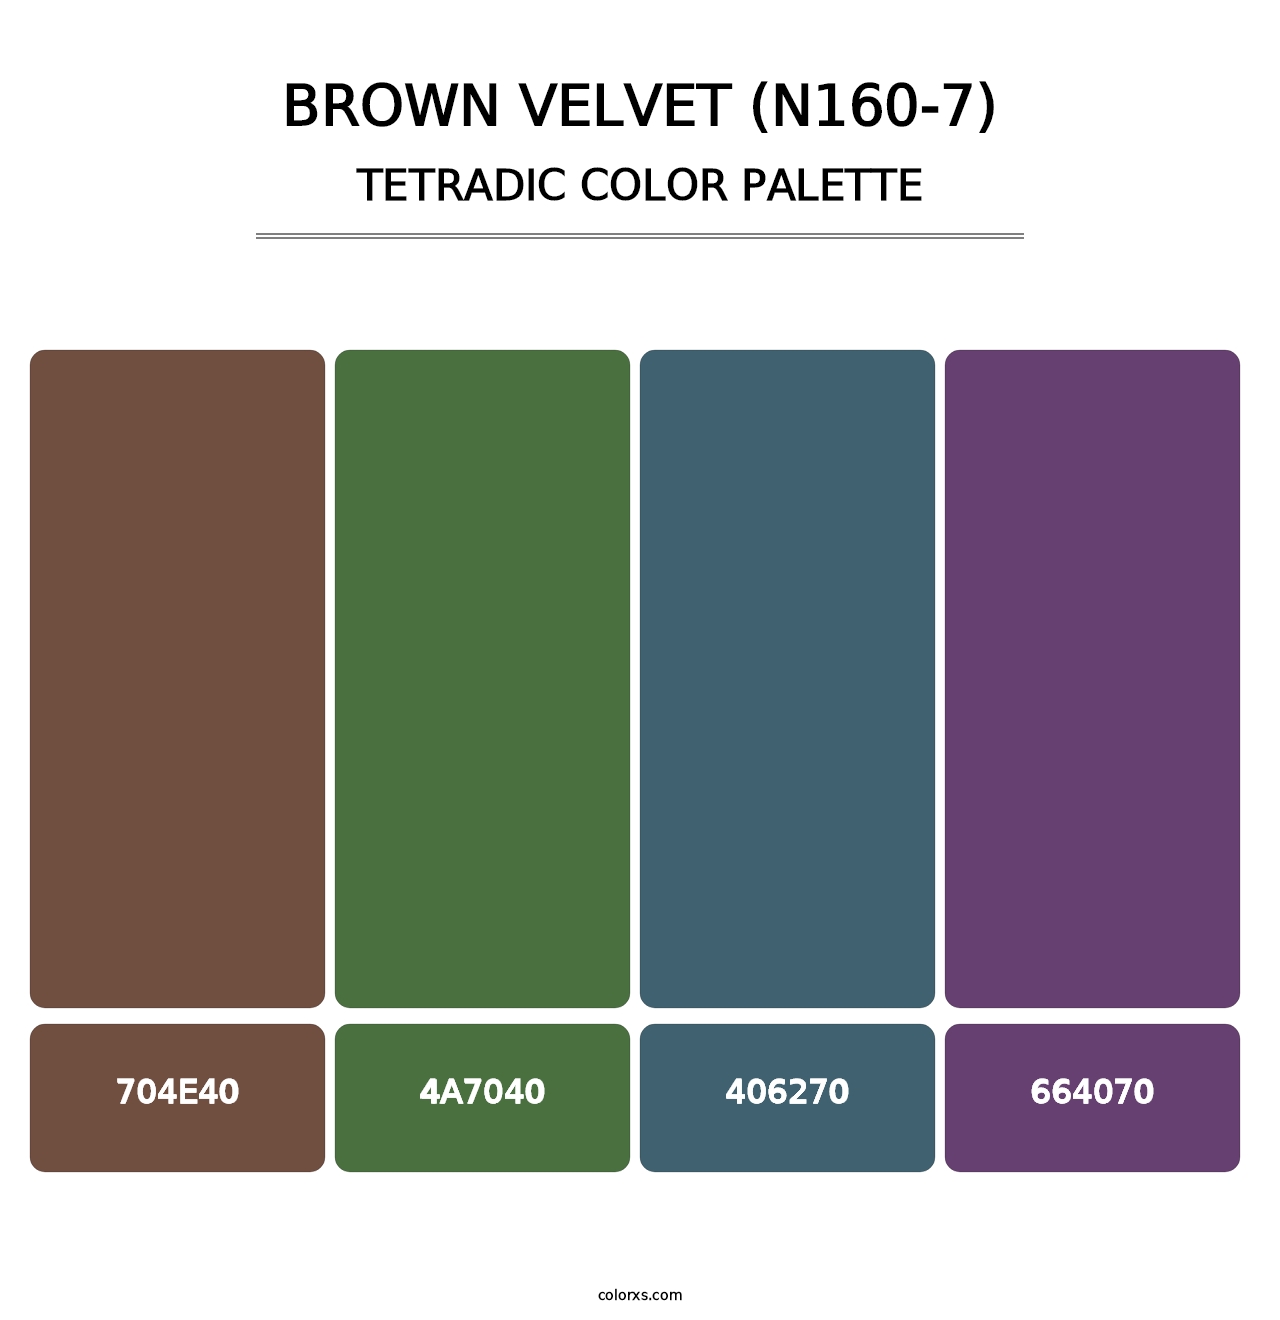 Brown Velvet (N160-7) - Tetradic Color Palette